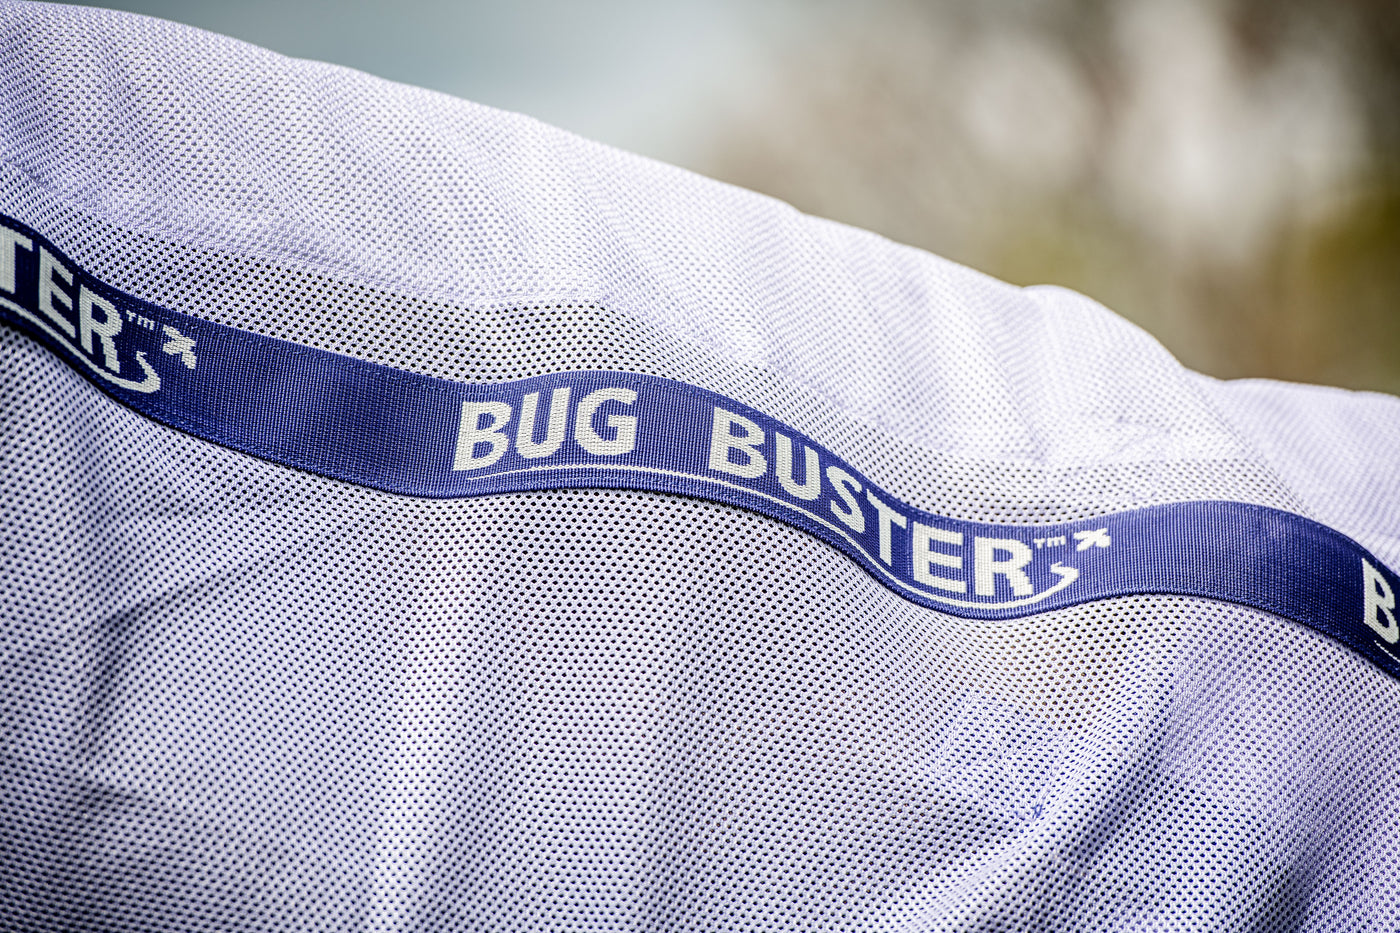 Amigo Bug Buster - OUTLET